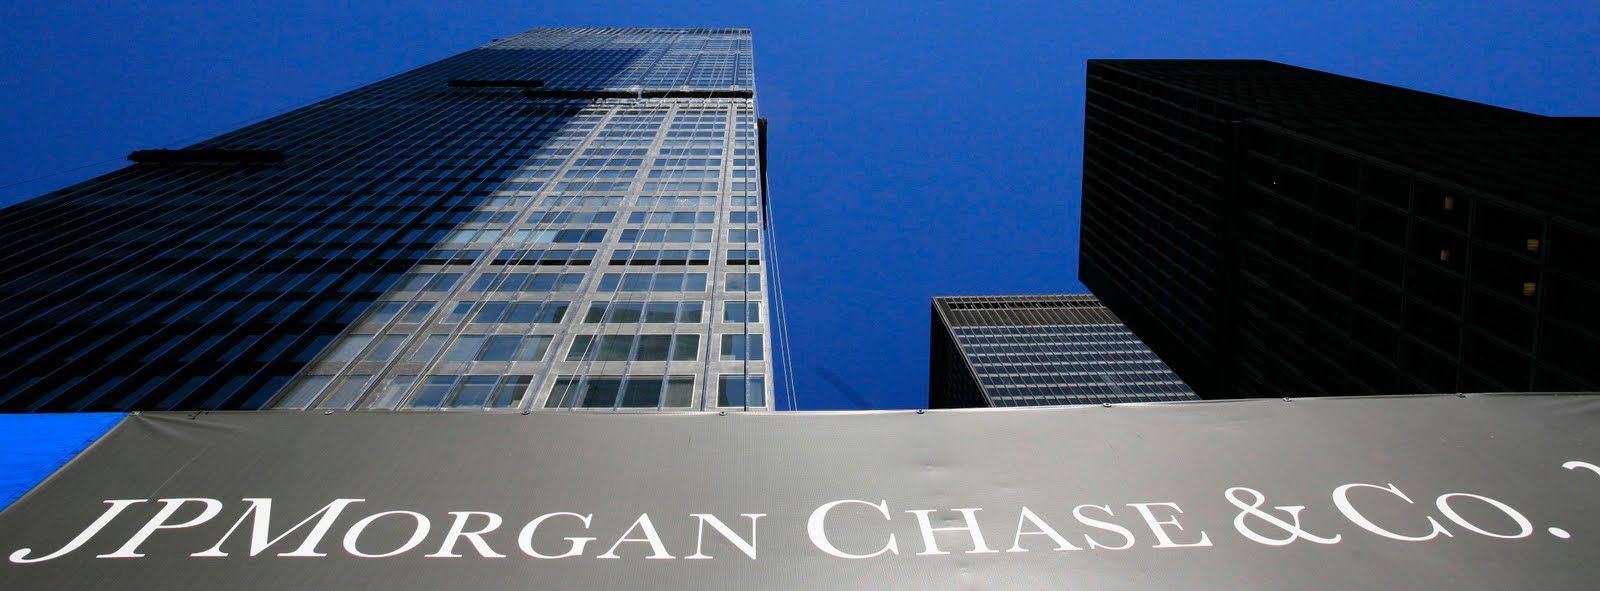 JPMorgan Chase: JPMorgan Chase - History, CEO, and more